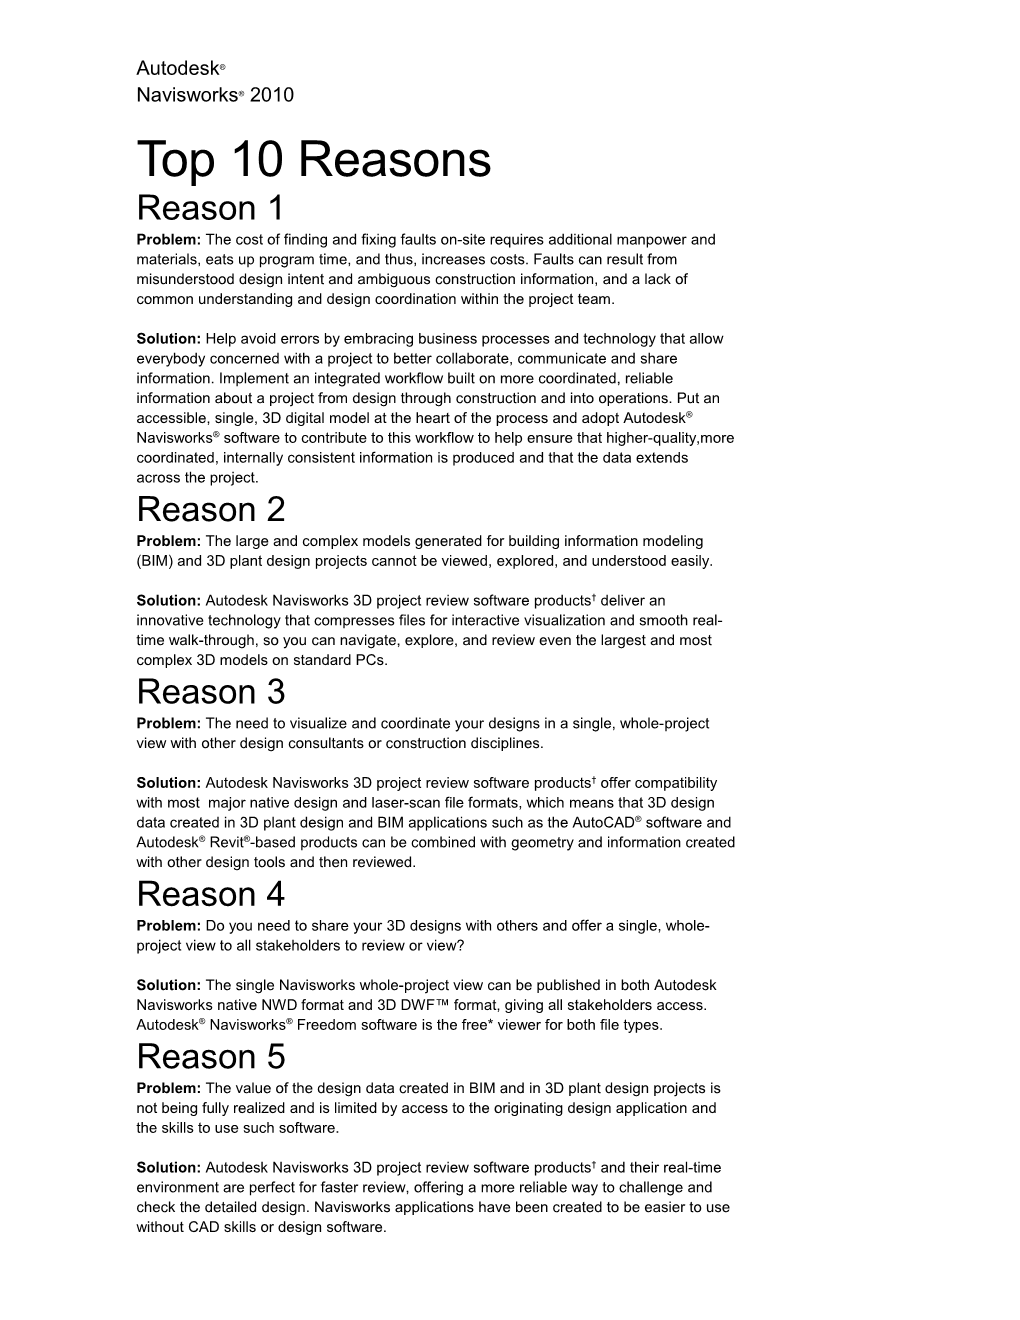 Autodesk Navisworks 2010 Top 10 Reasons